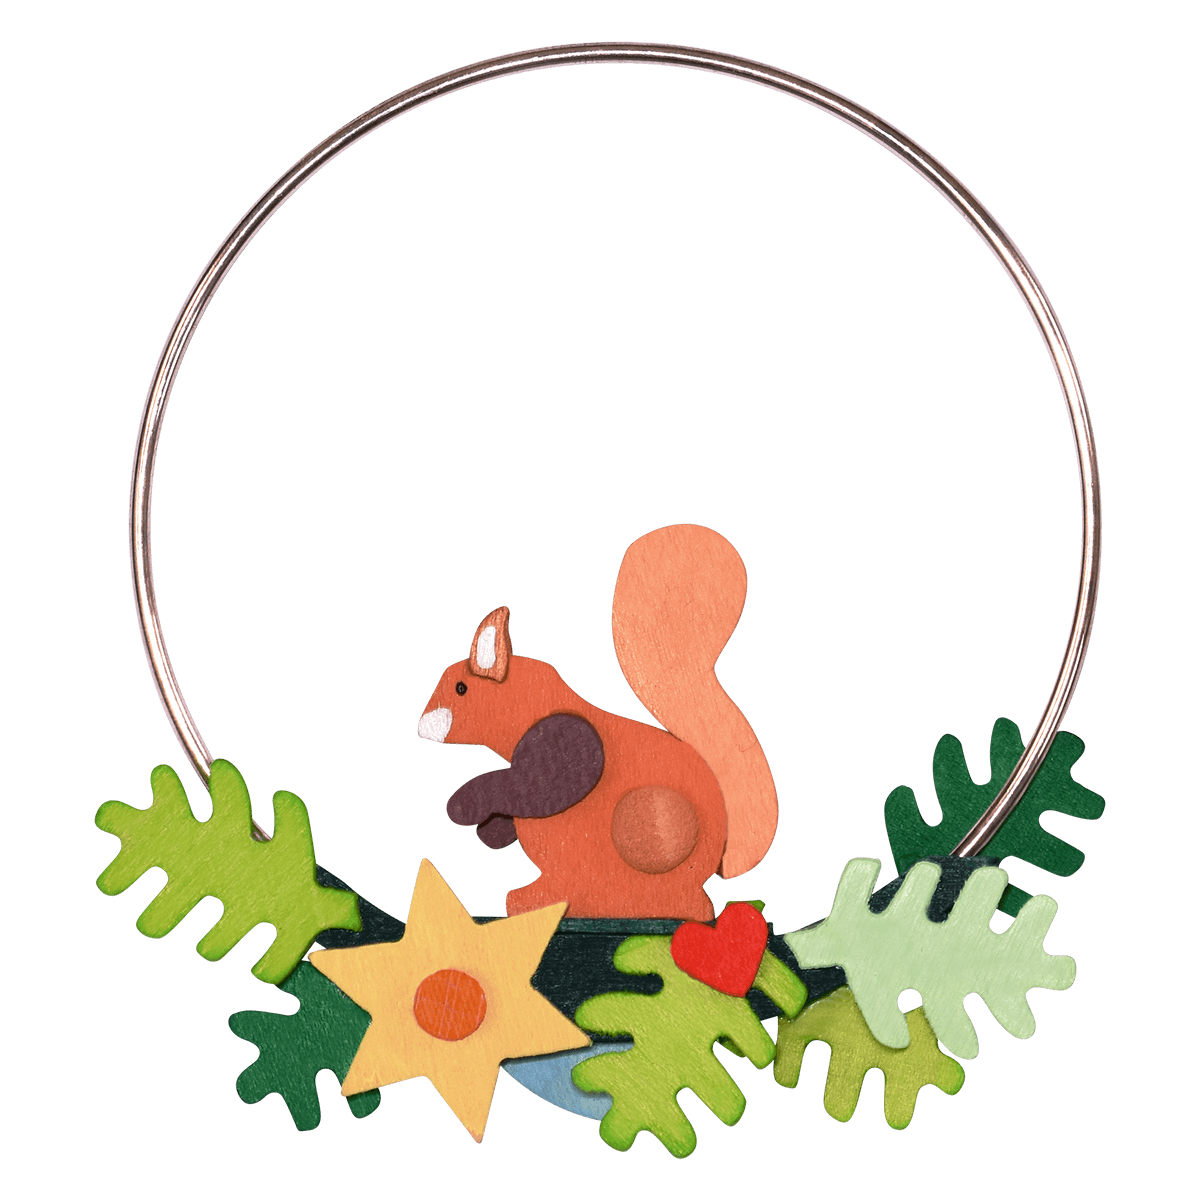 Weihnachtsbaumschmuck "Eichhörnchen im Ring"